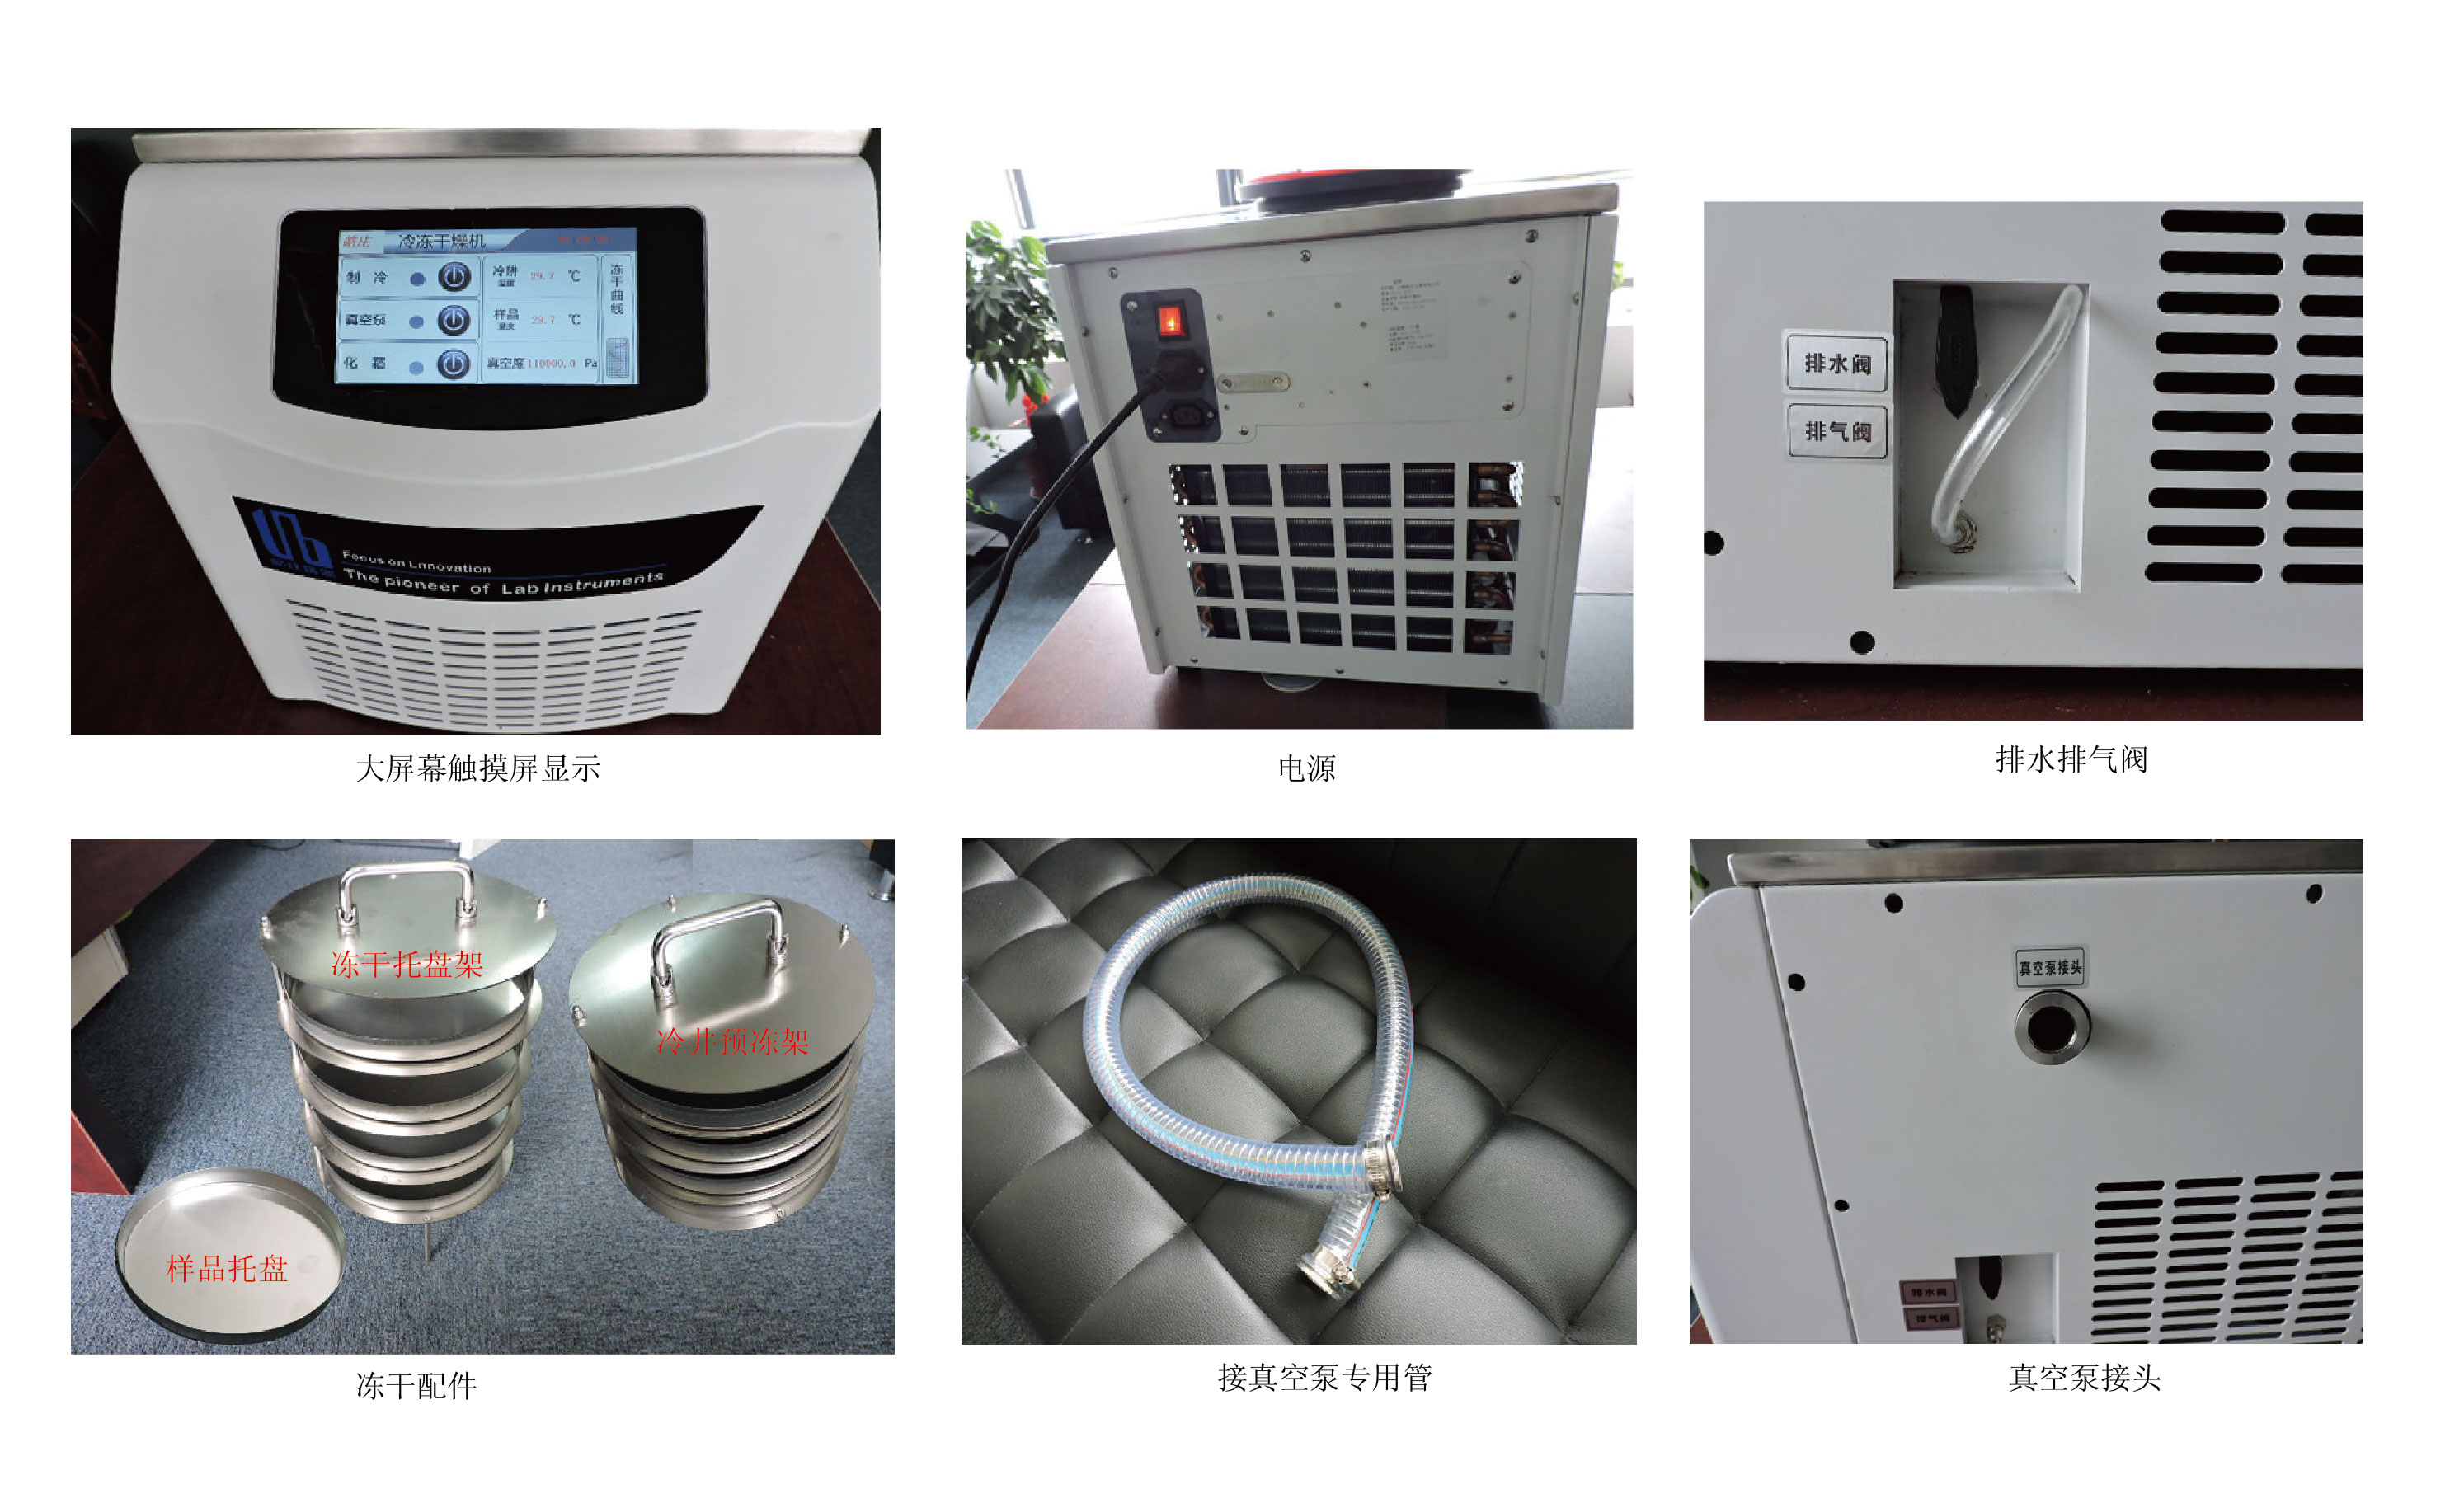 冷冻干燥机,皓庄,FD-A12N-80 普通型 普通型